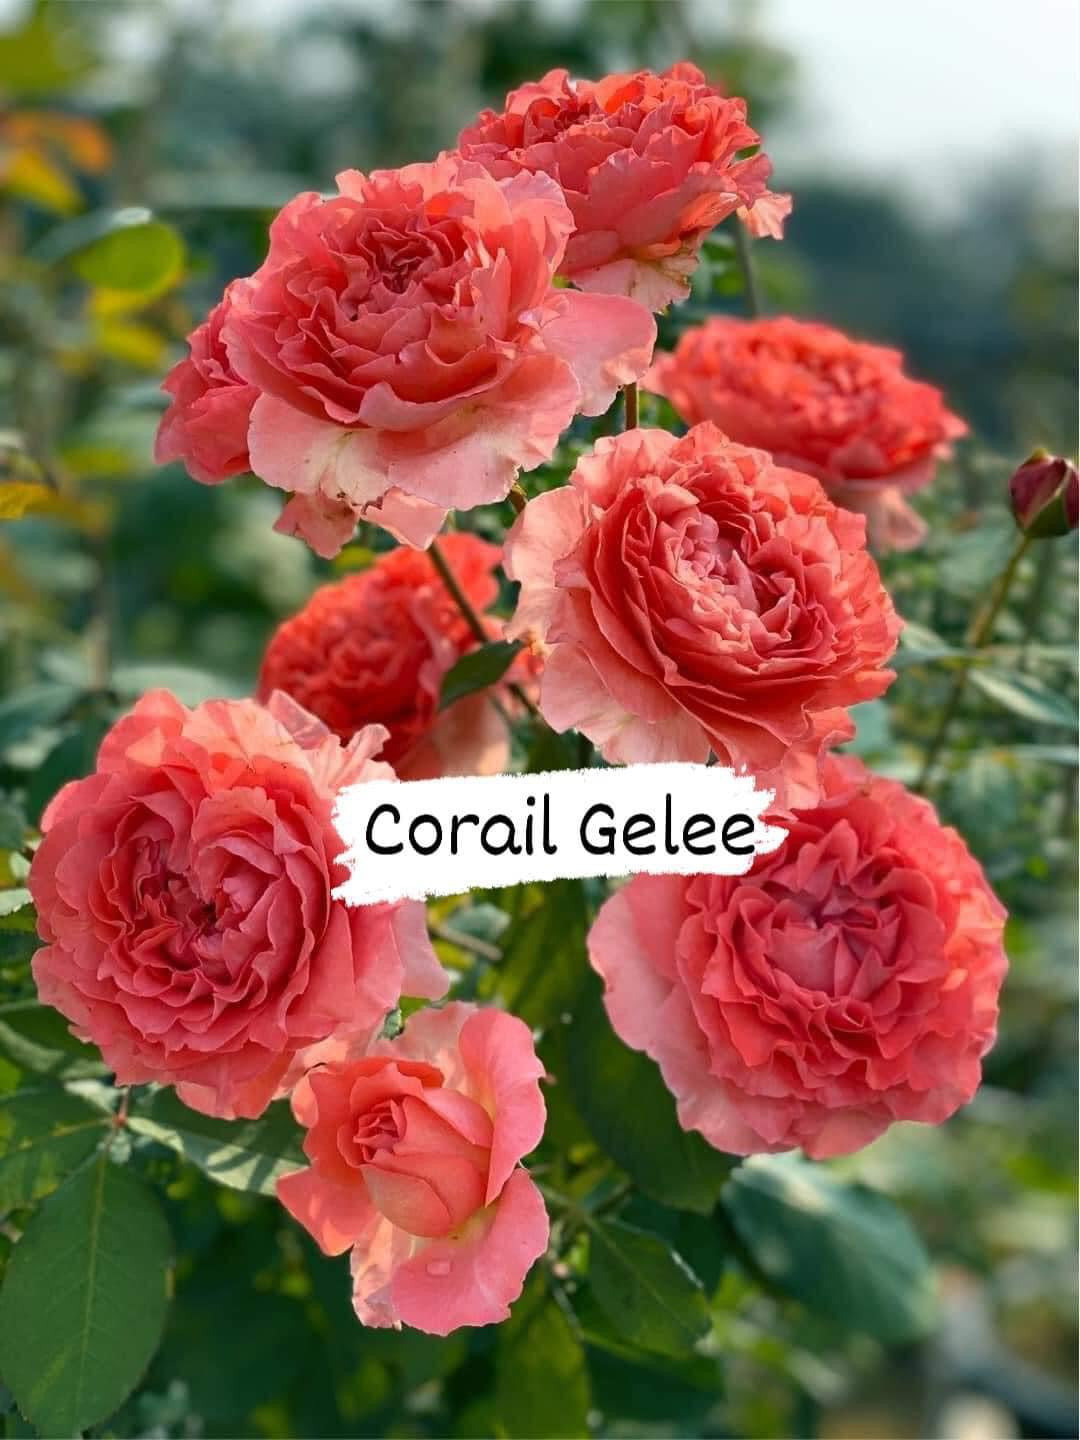 Corail Gelee